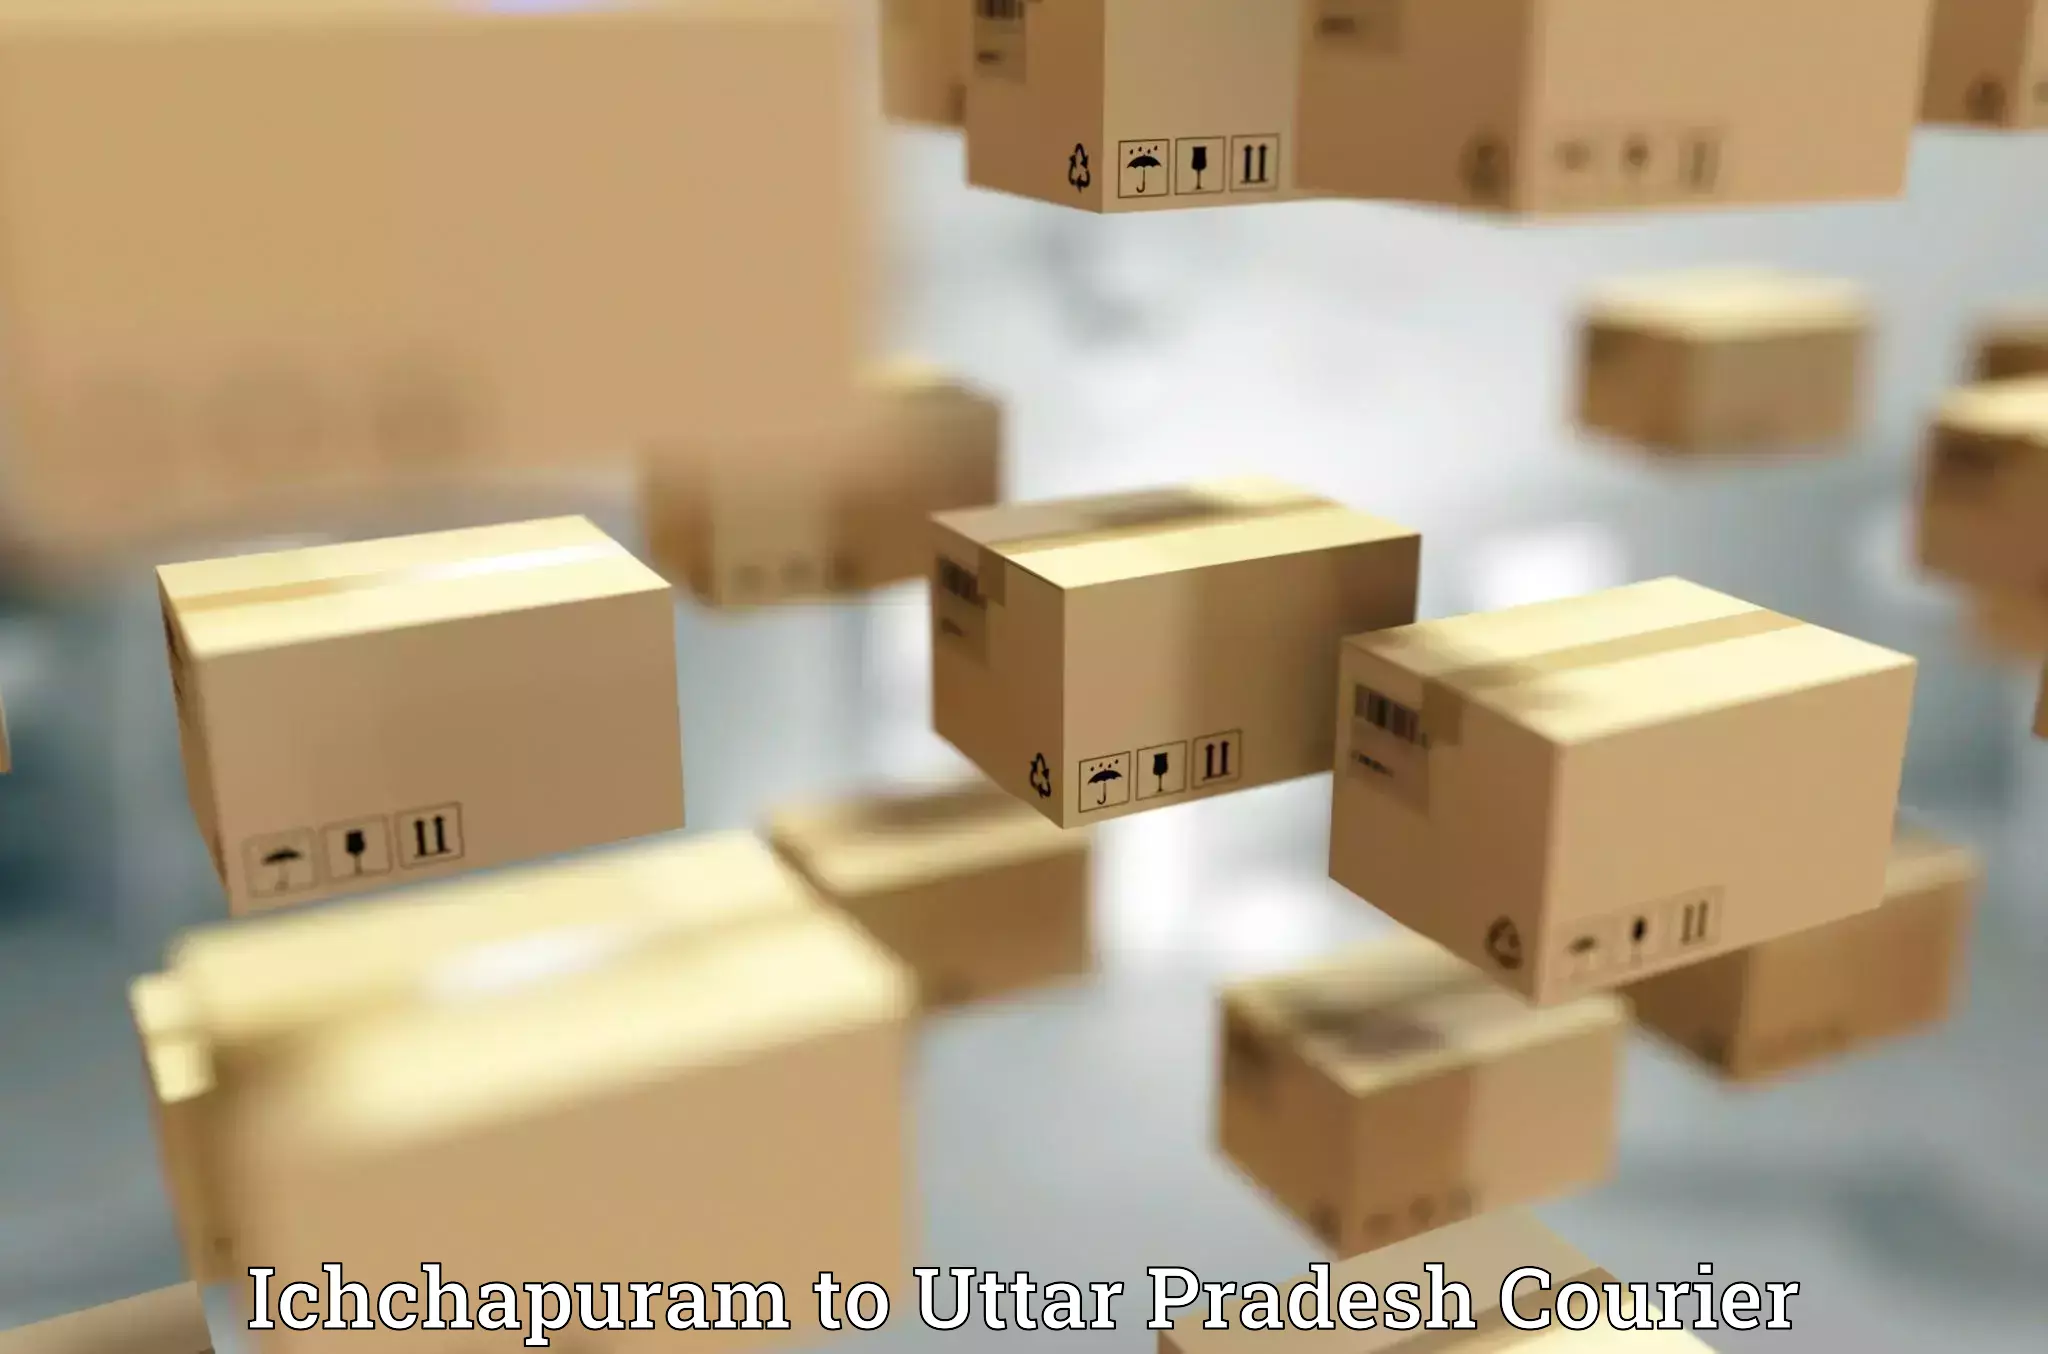 Next-generation courier services Ichchapuram to Mughalsarai